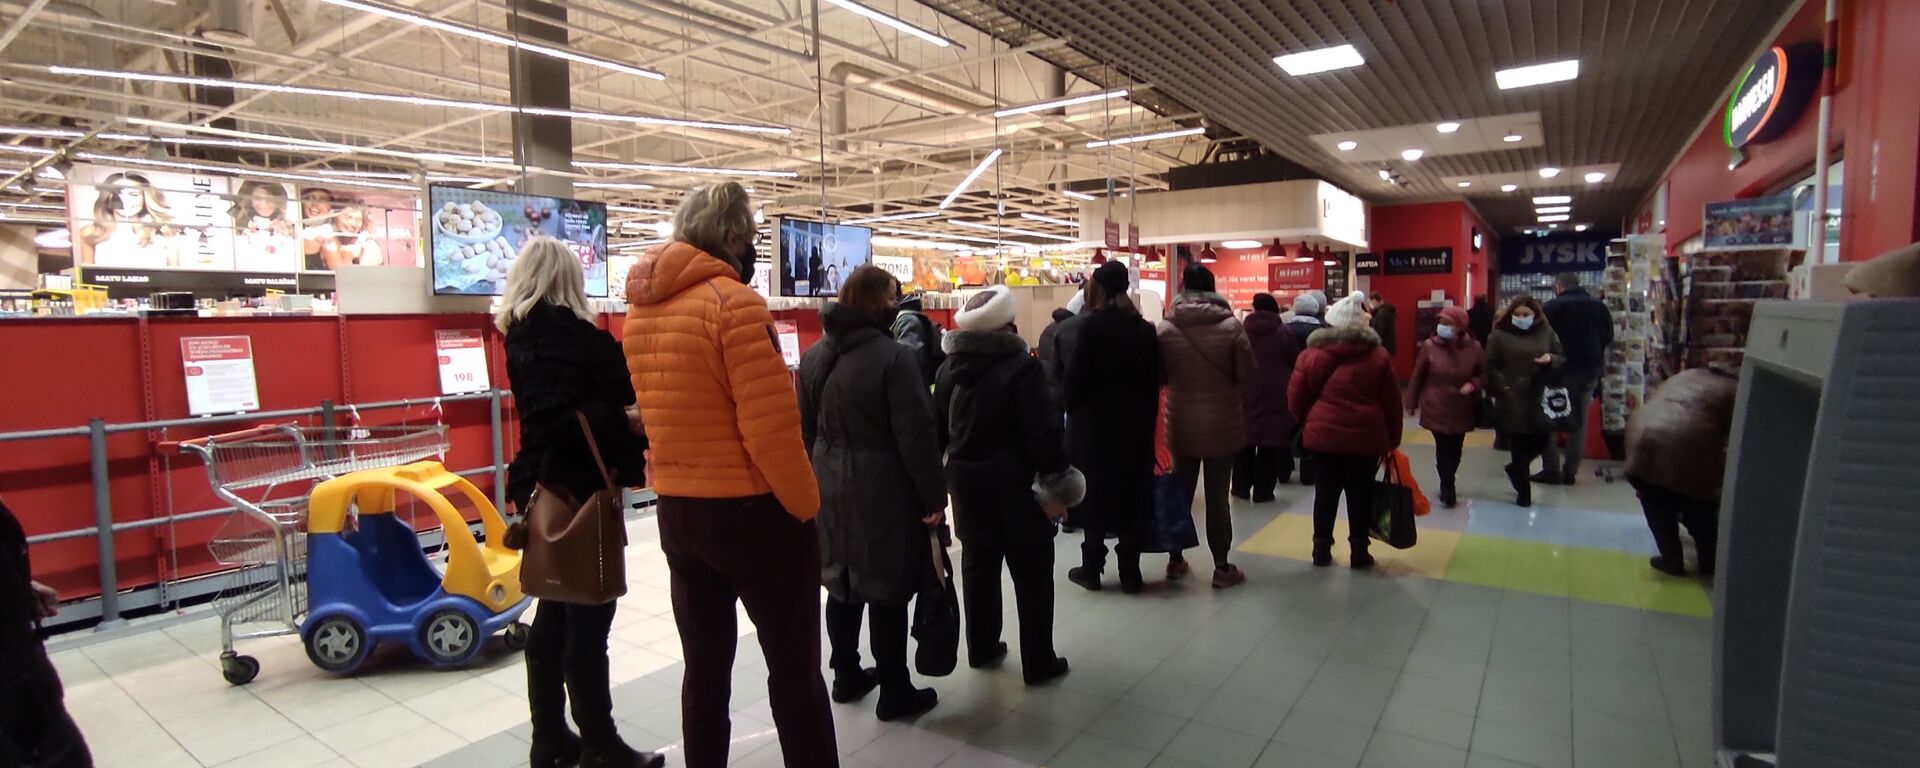 Очередь на вход в торговый зал супермаркета Rimi в Риге - Sputnik Латвия, 1920, 08.02.2021